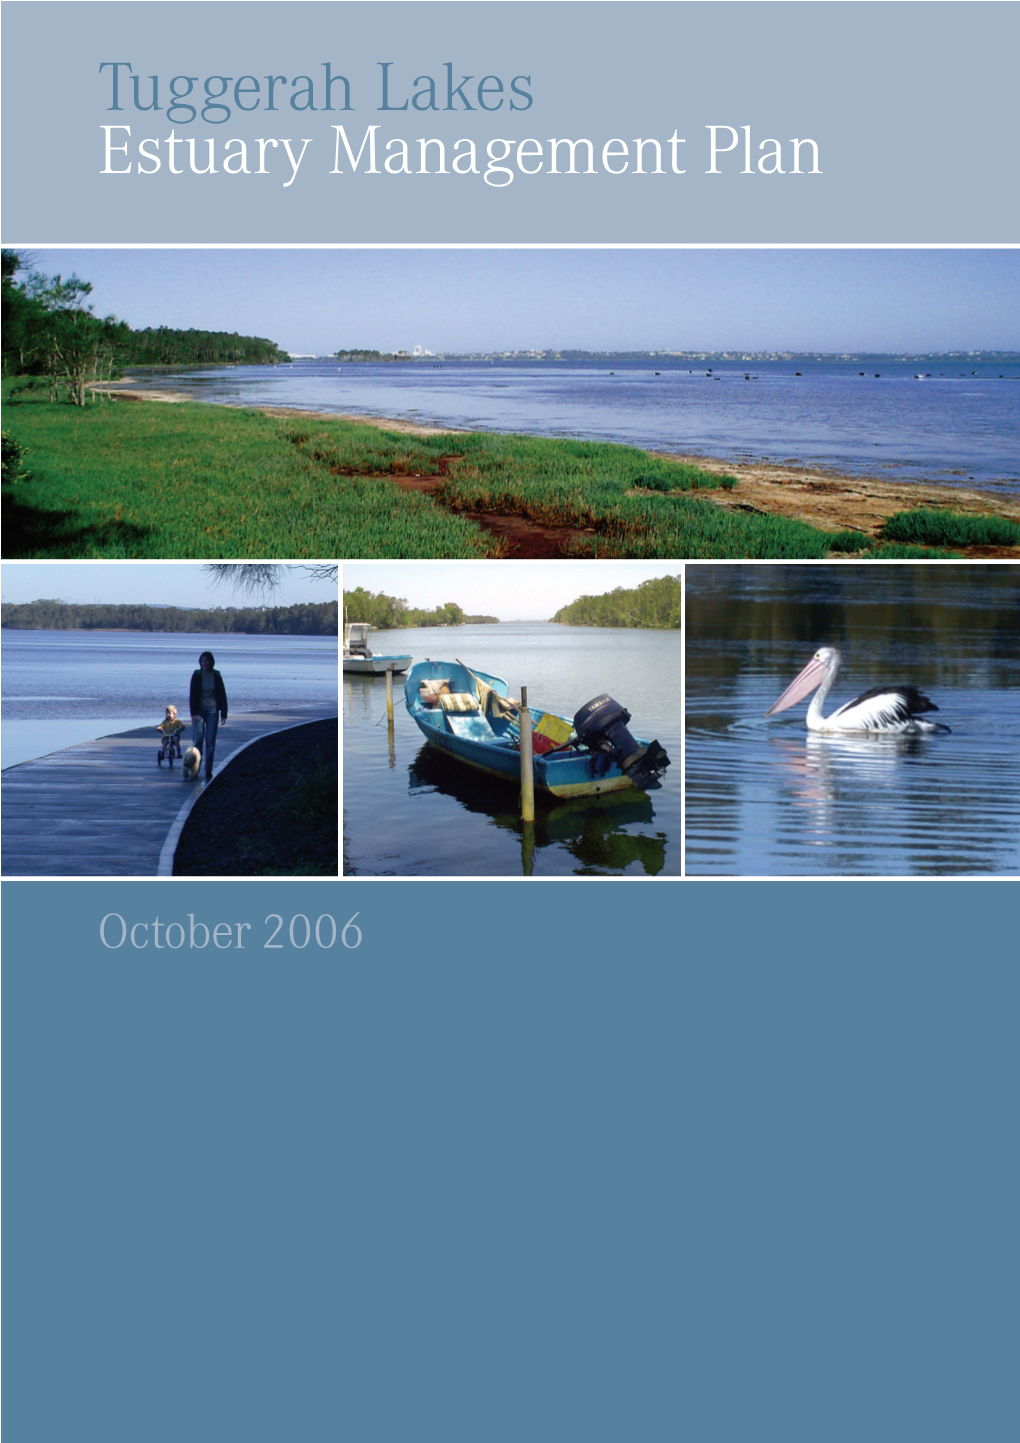 Tuggerah Lakes Estuary Management Plan